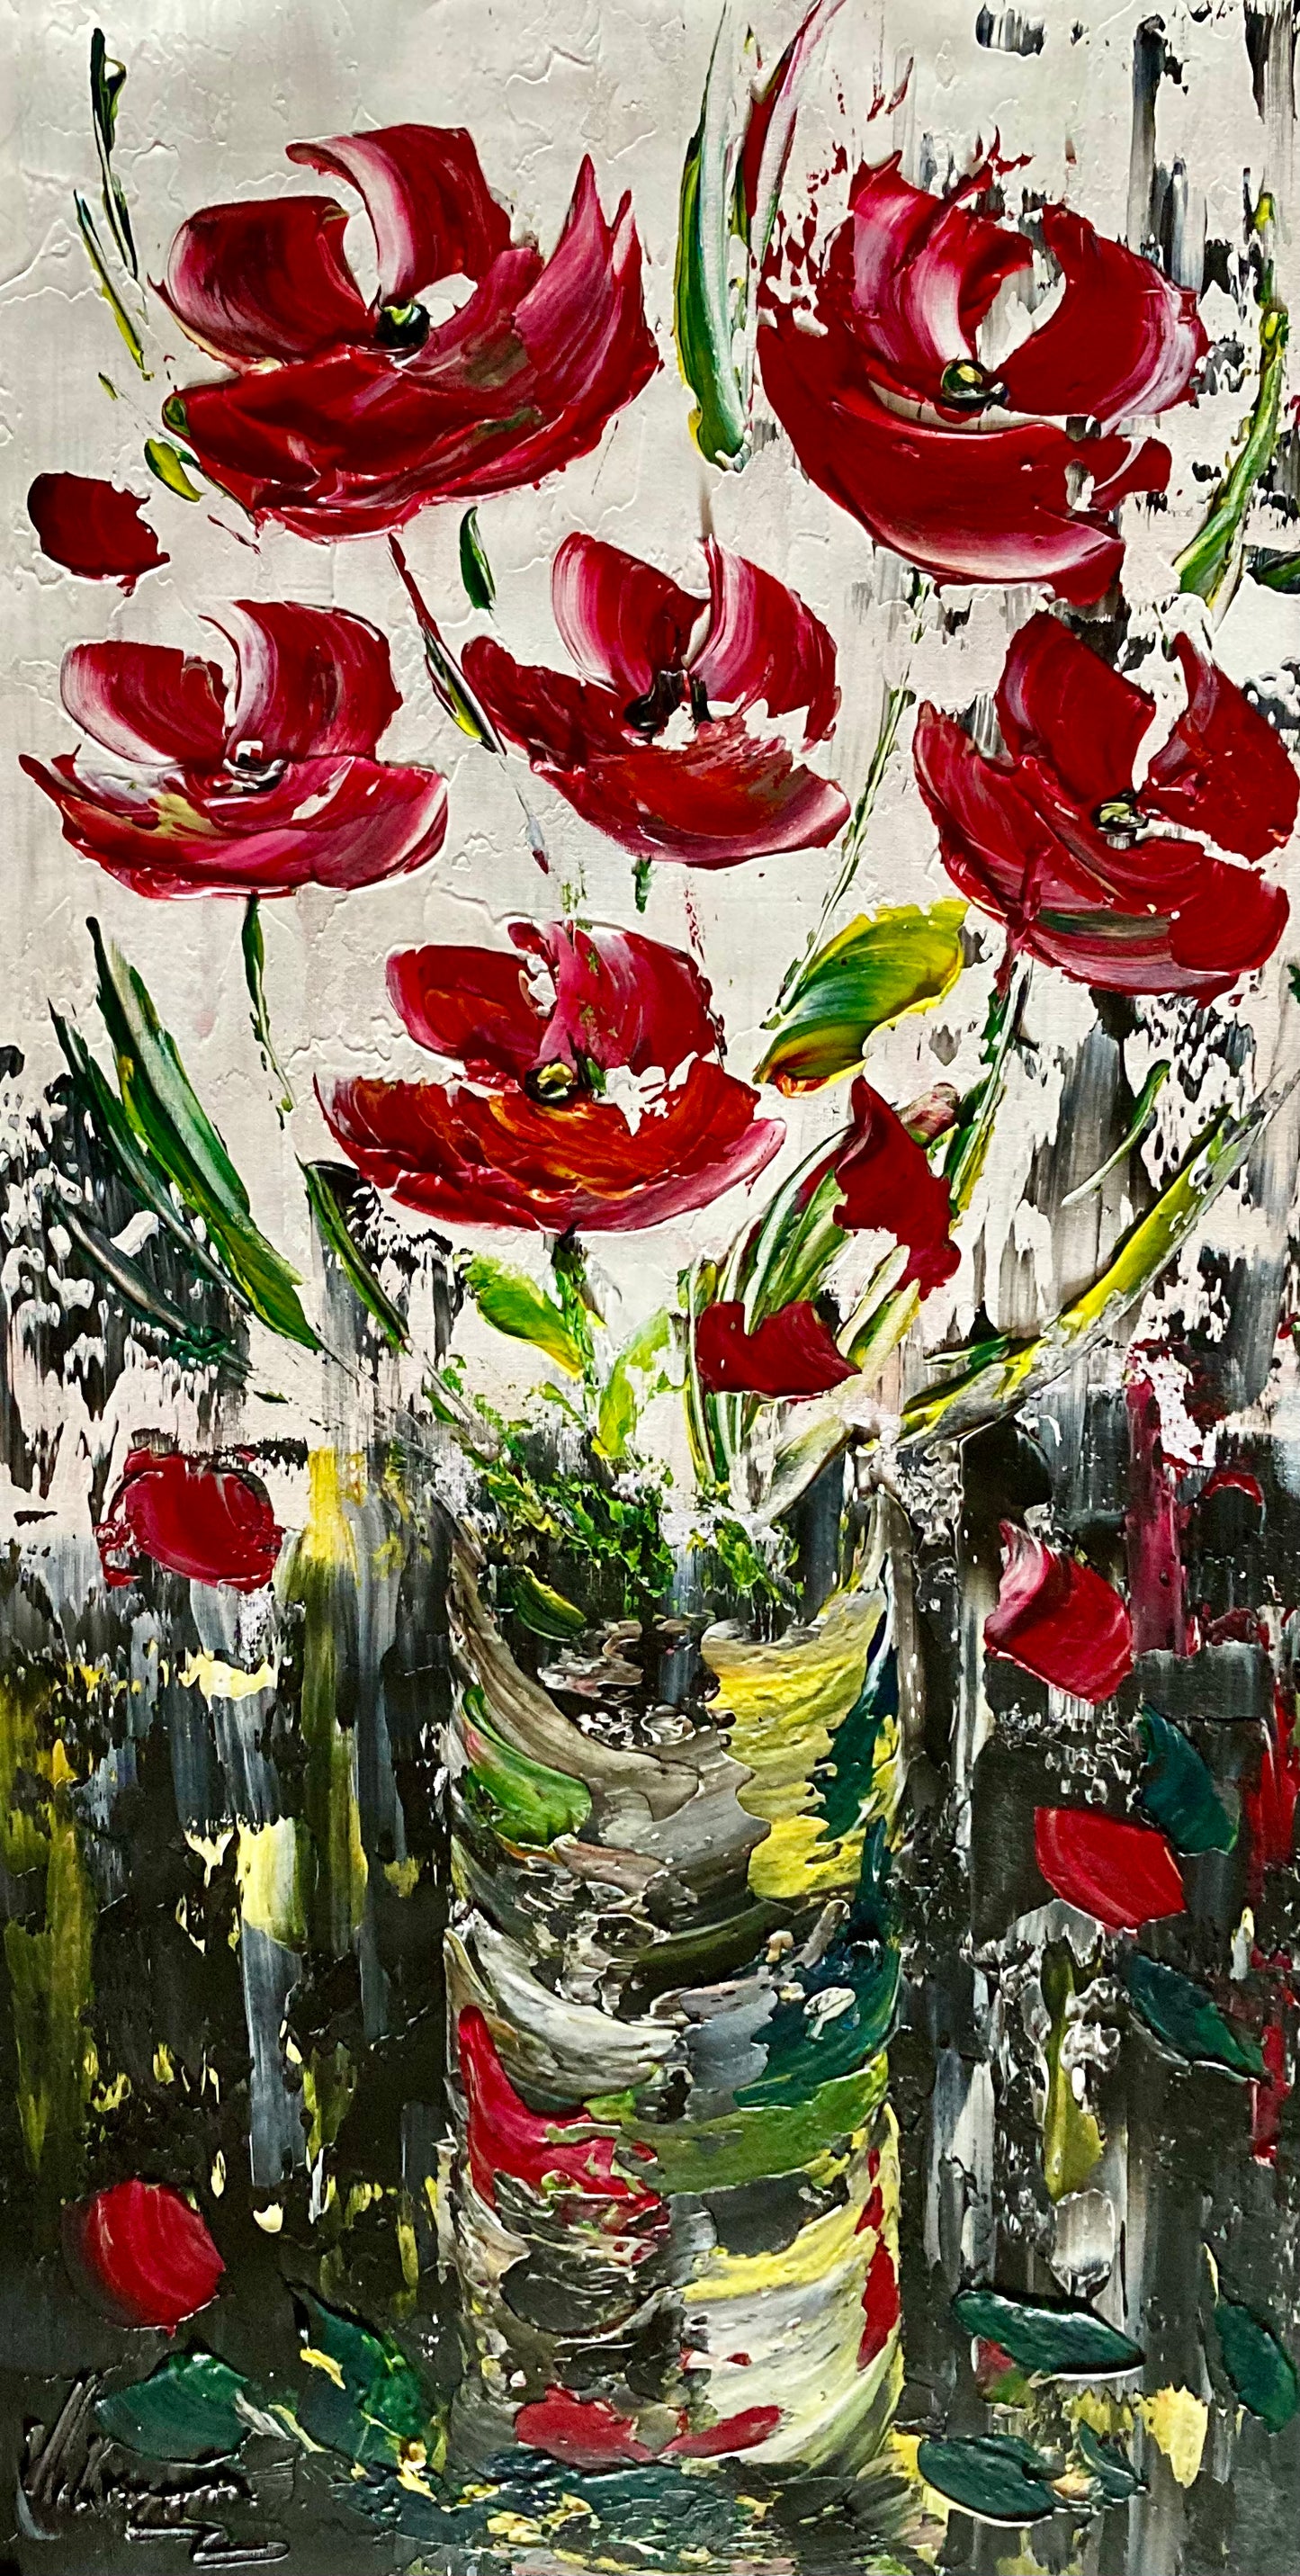 Tableau fleurs rouge noir blanc moderne contemporain 30x60 cm peint à la main virginie Linard ©